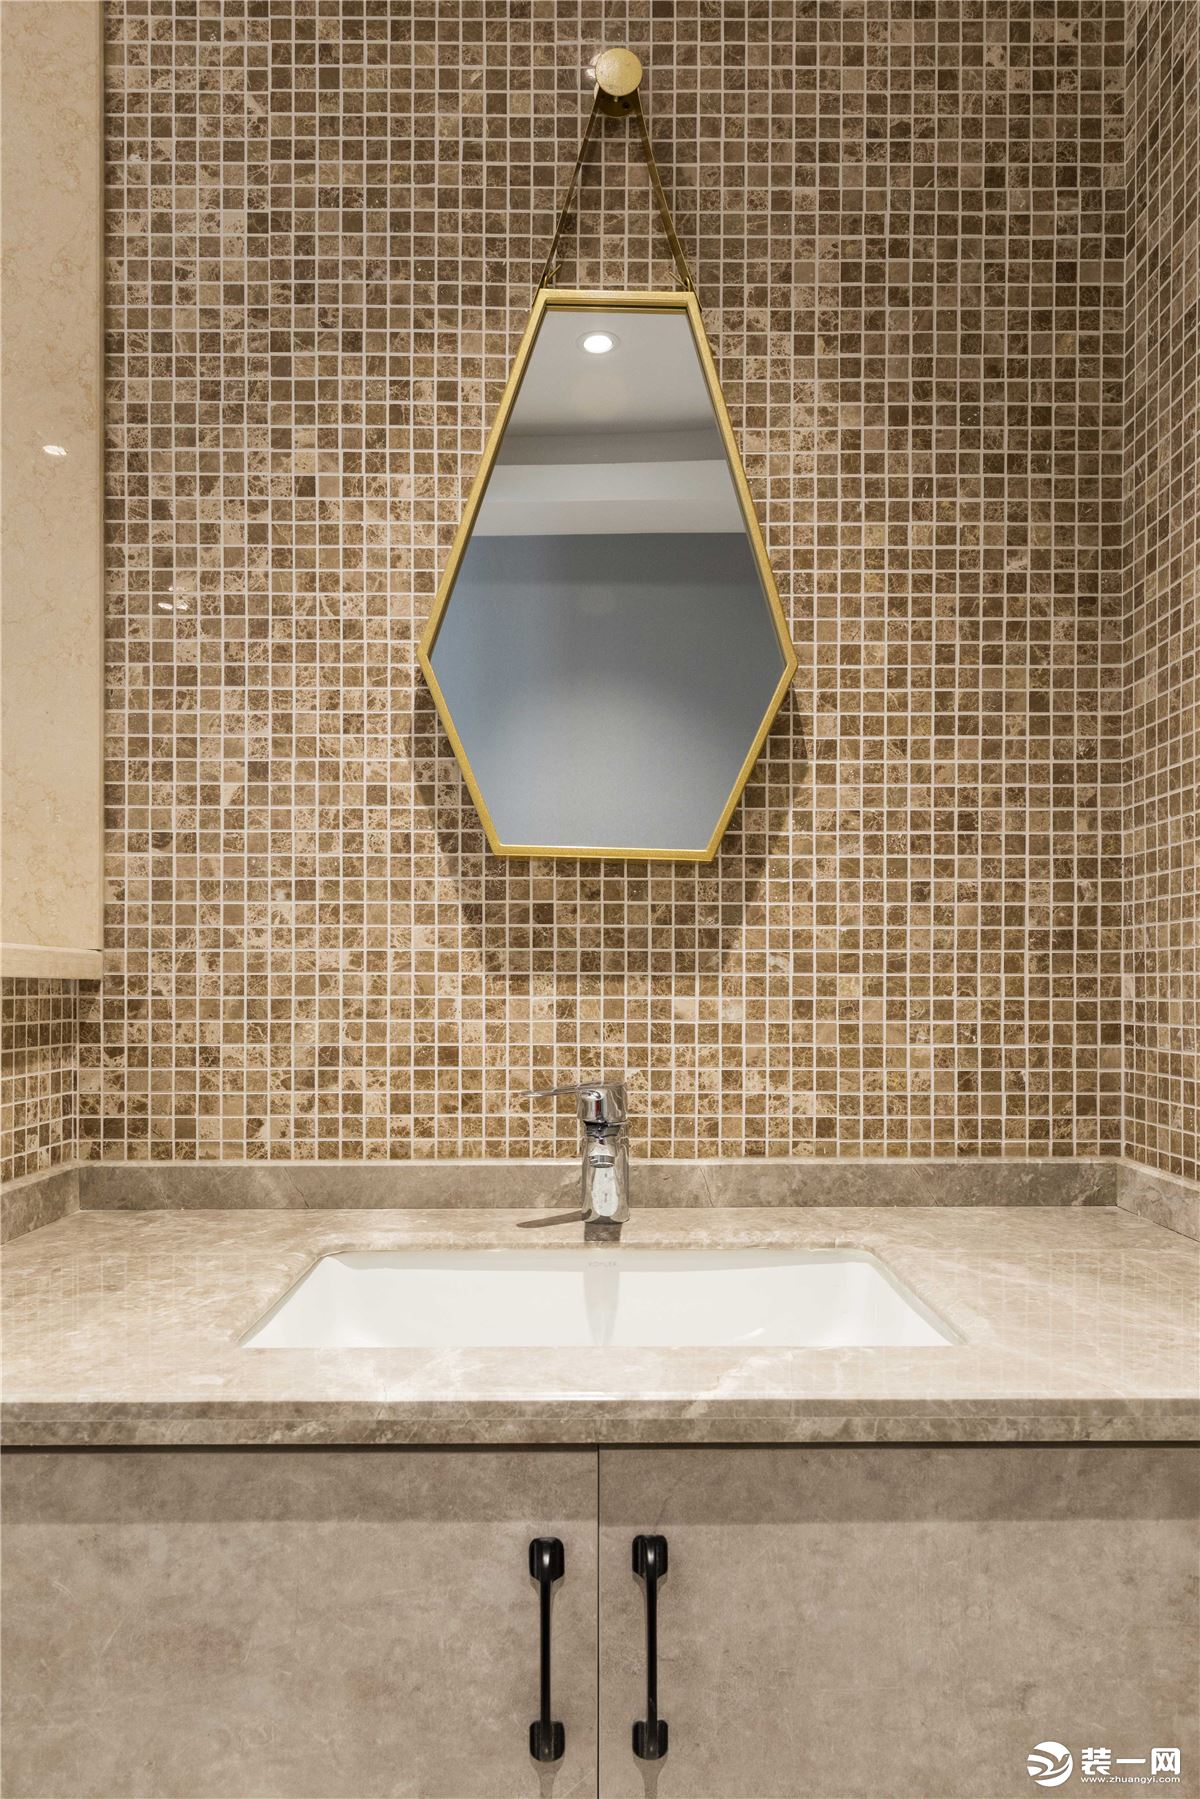 将主卧的空间改为干湿分离的公共卫生间，并且将洗手区域移到外面，敲掉半面墙来增加实用性。